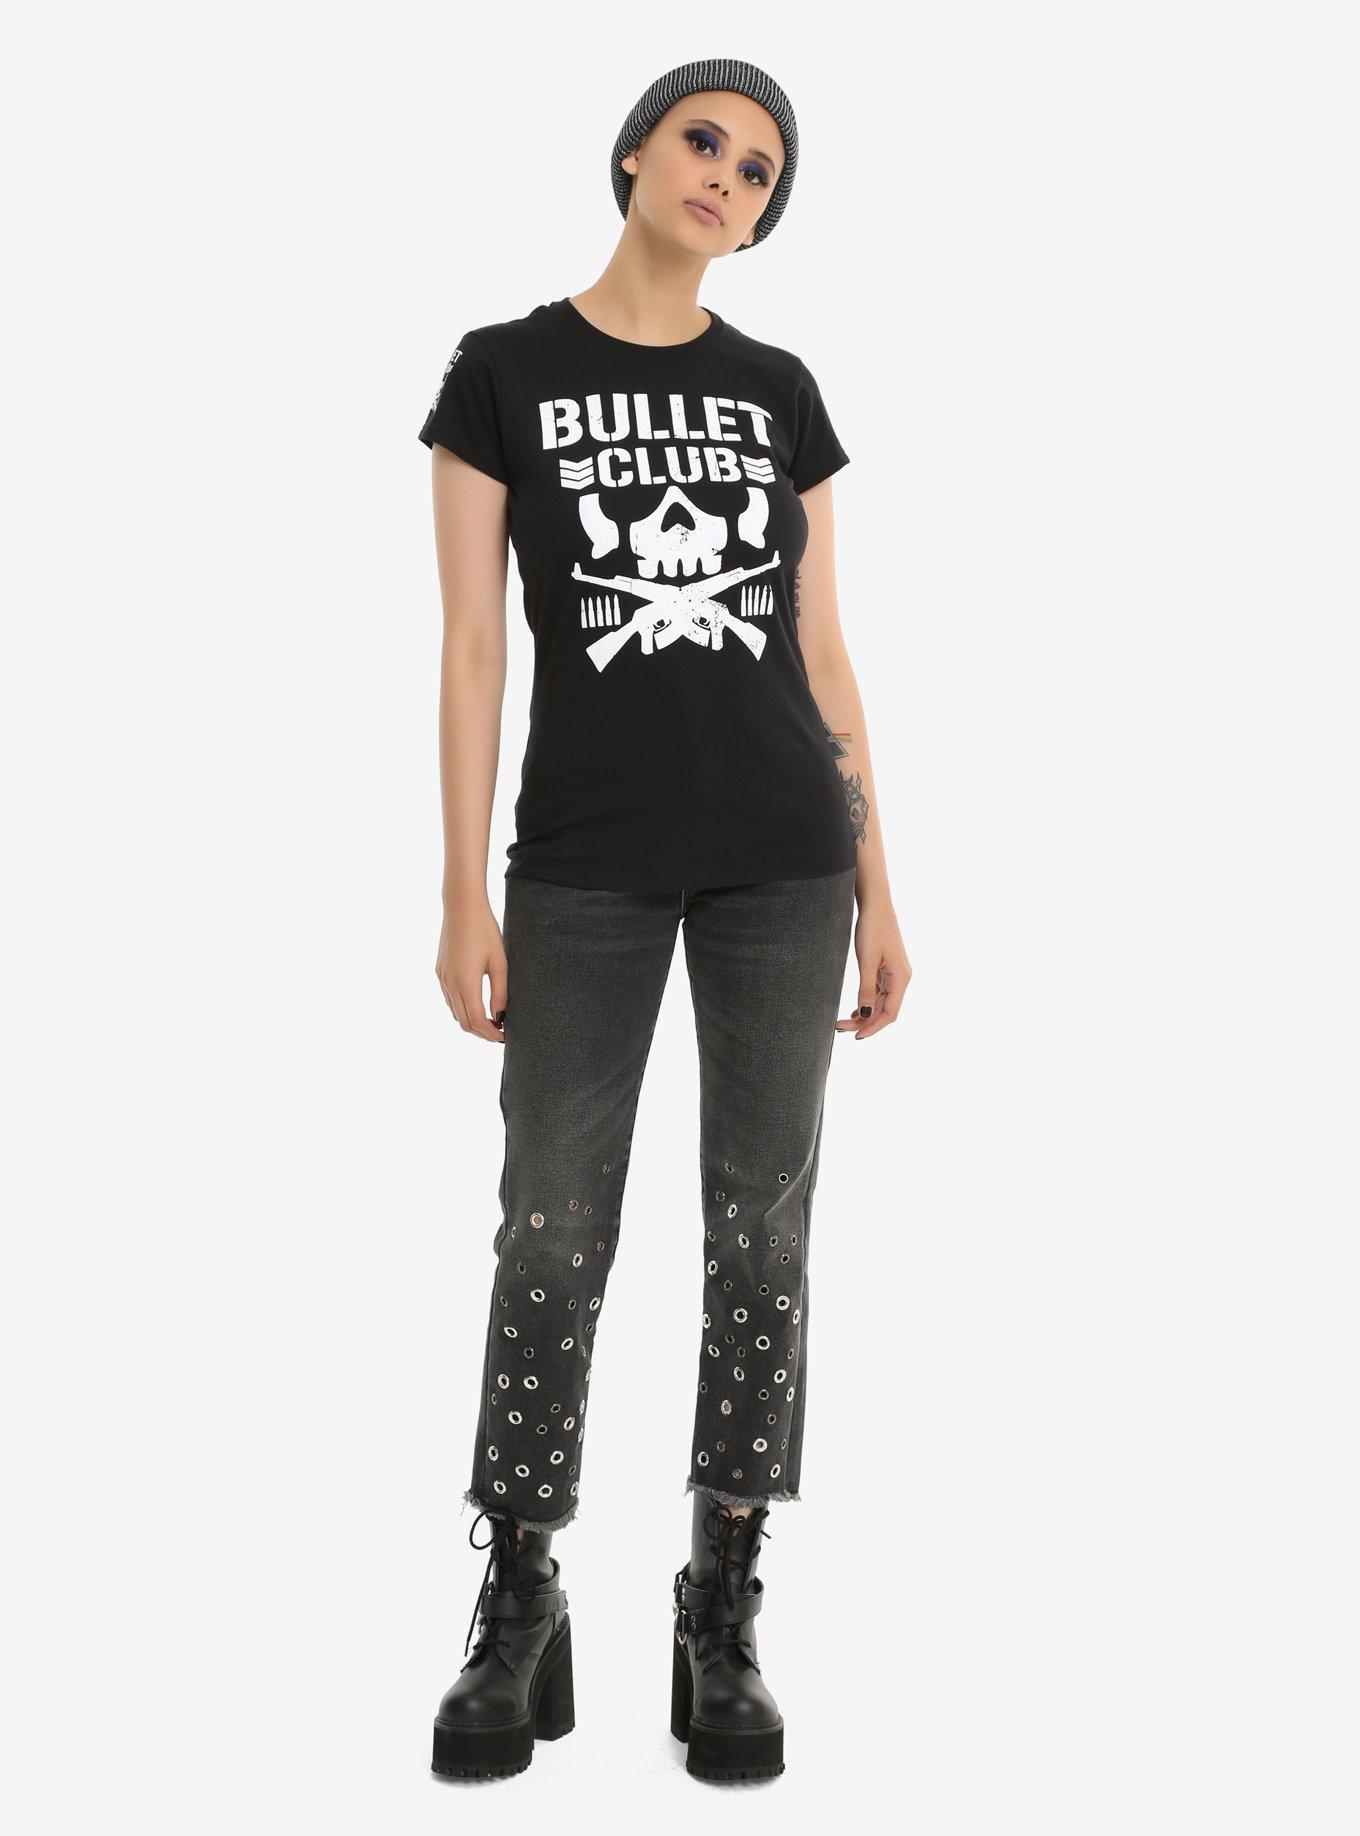 New Japan Pro-Wrestling Bullet Club Logo Girls T-Shirt, , alternate